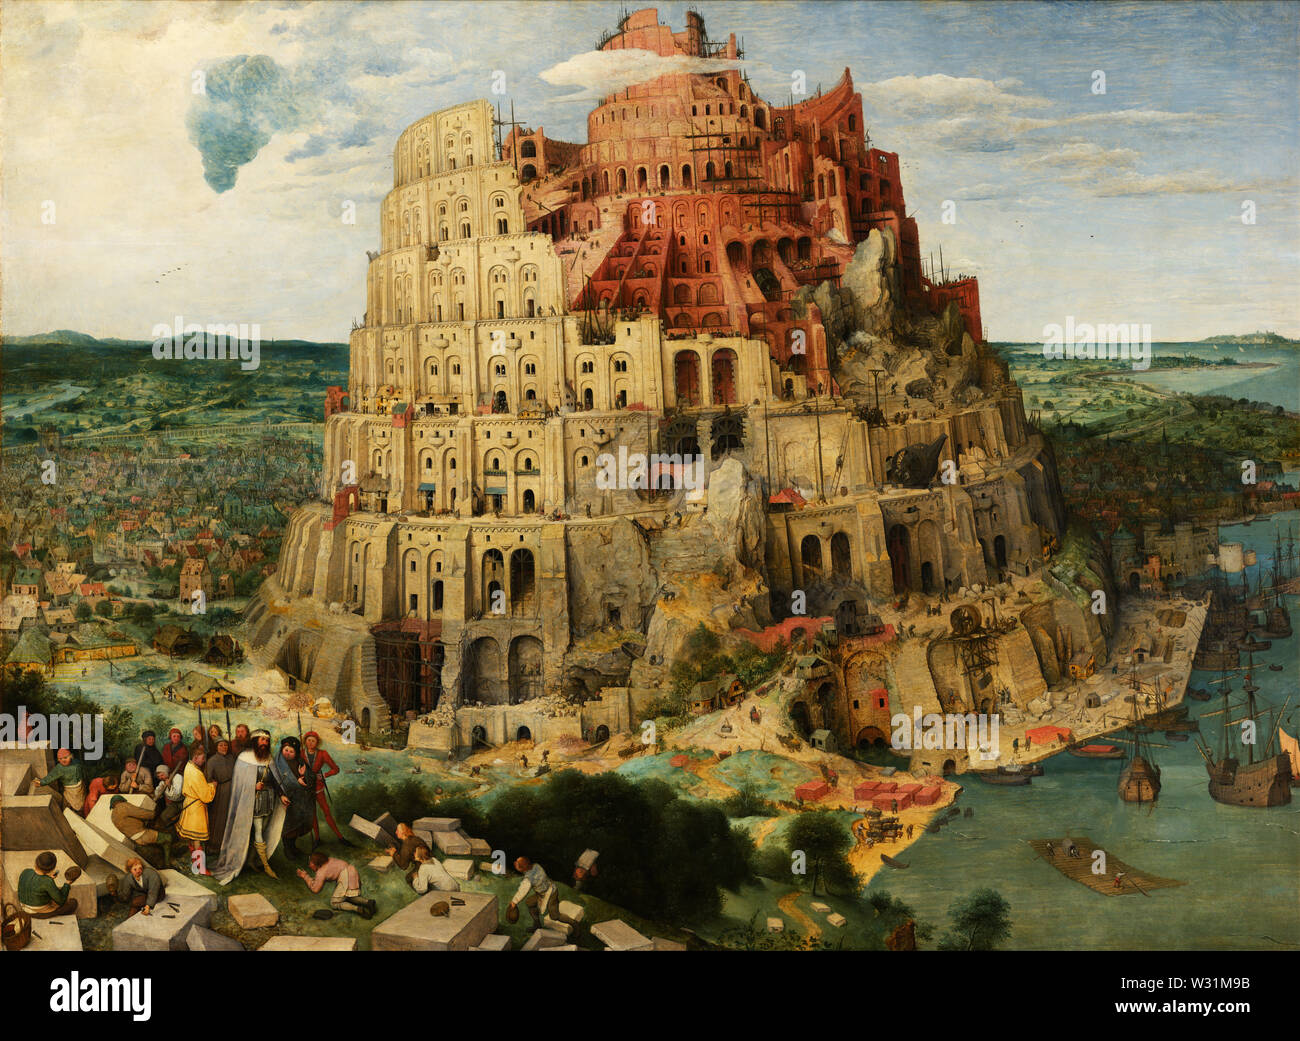 Der Turm von Babel (Wien) (1563) Gemälde von Pieter Bruegel (Brueghel) der Ältere (I) - Sehr hohe Qualität und Auflösung Stockfoto